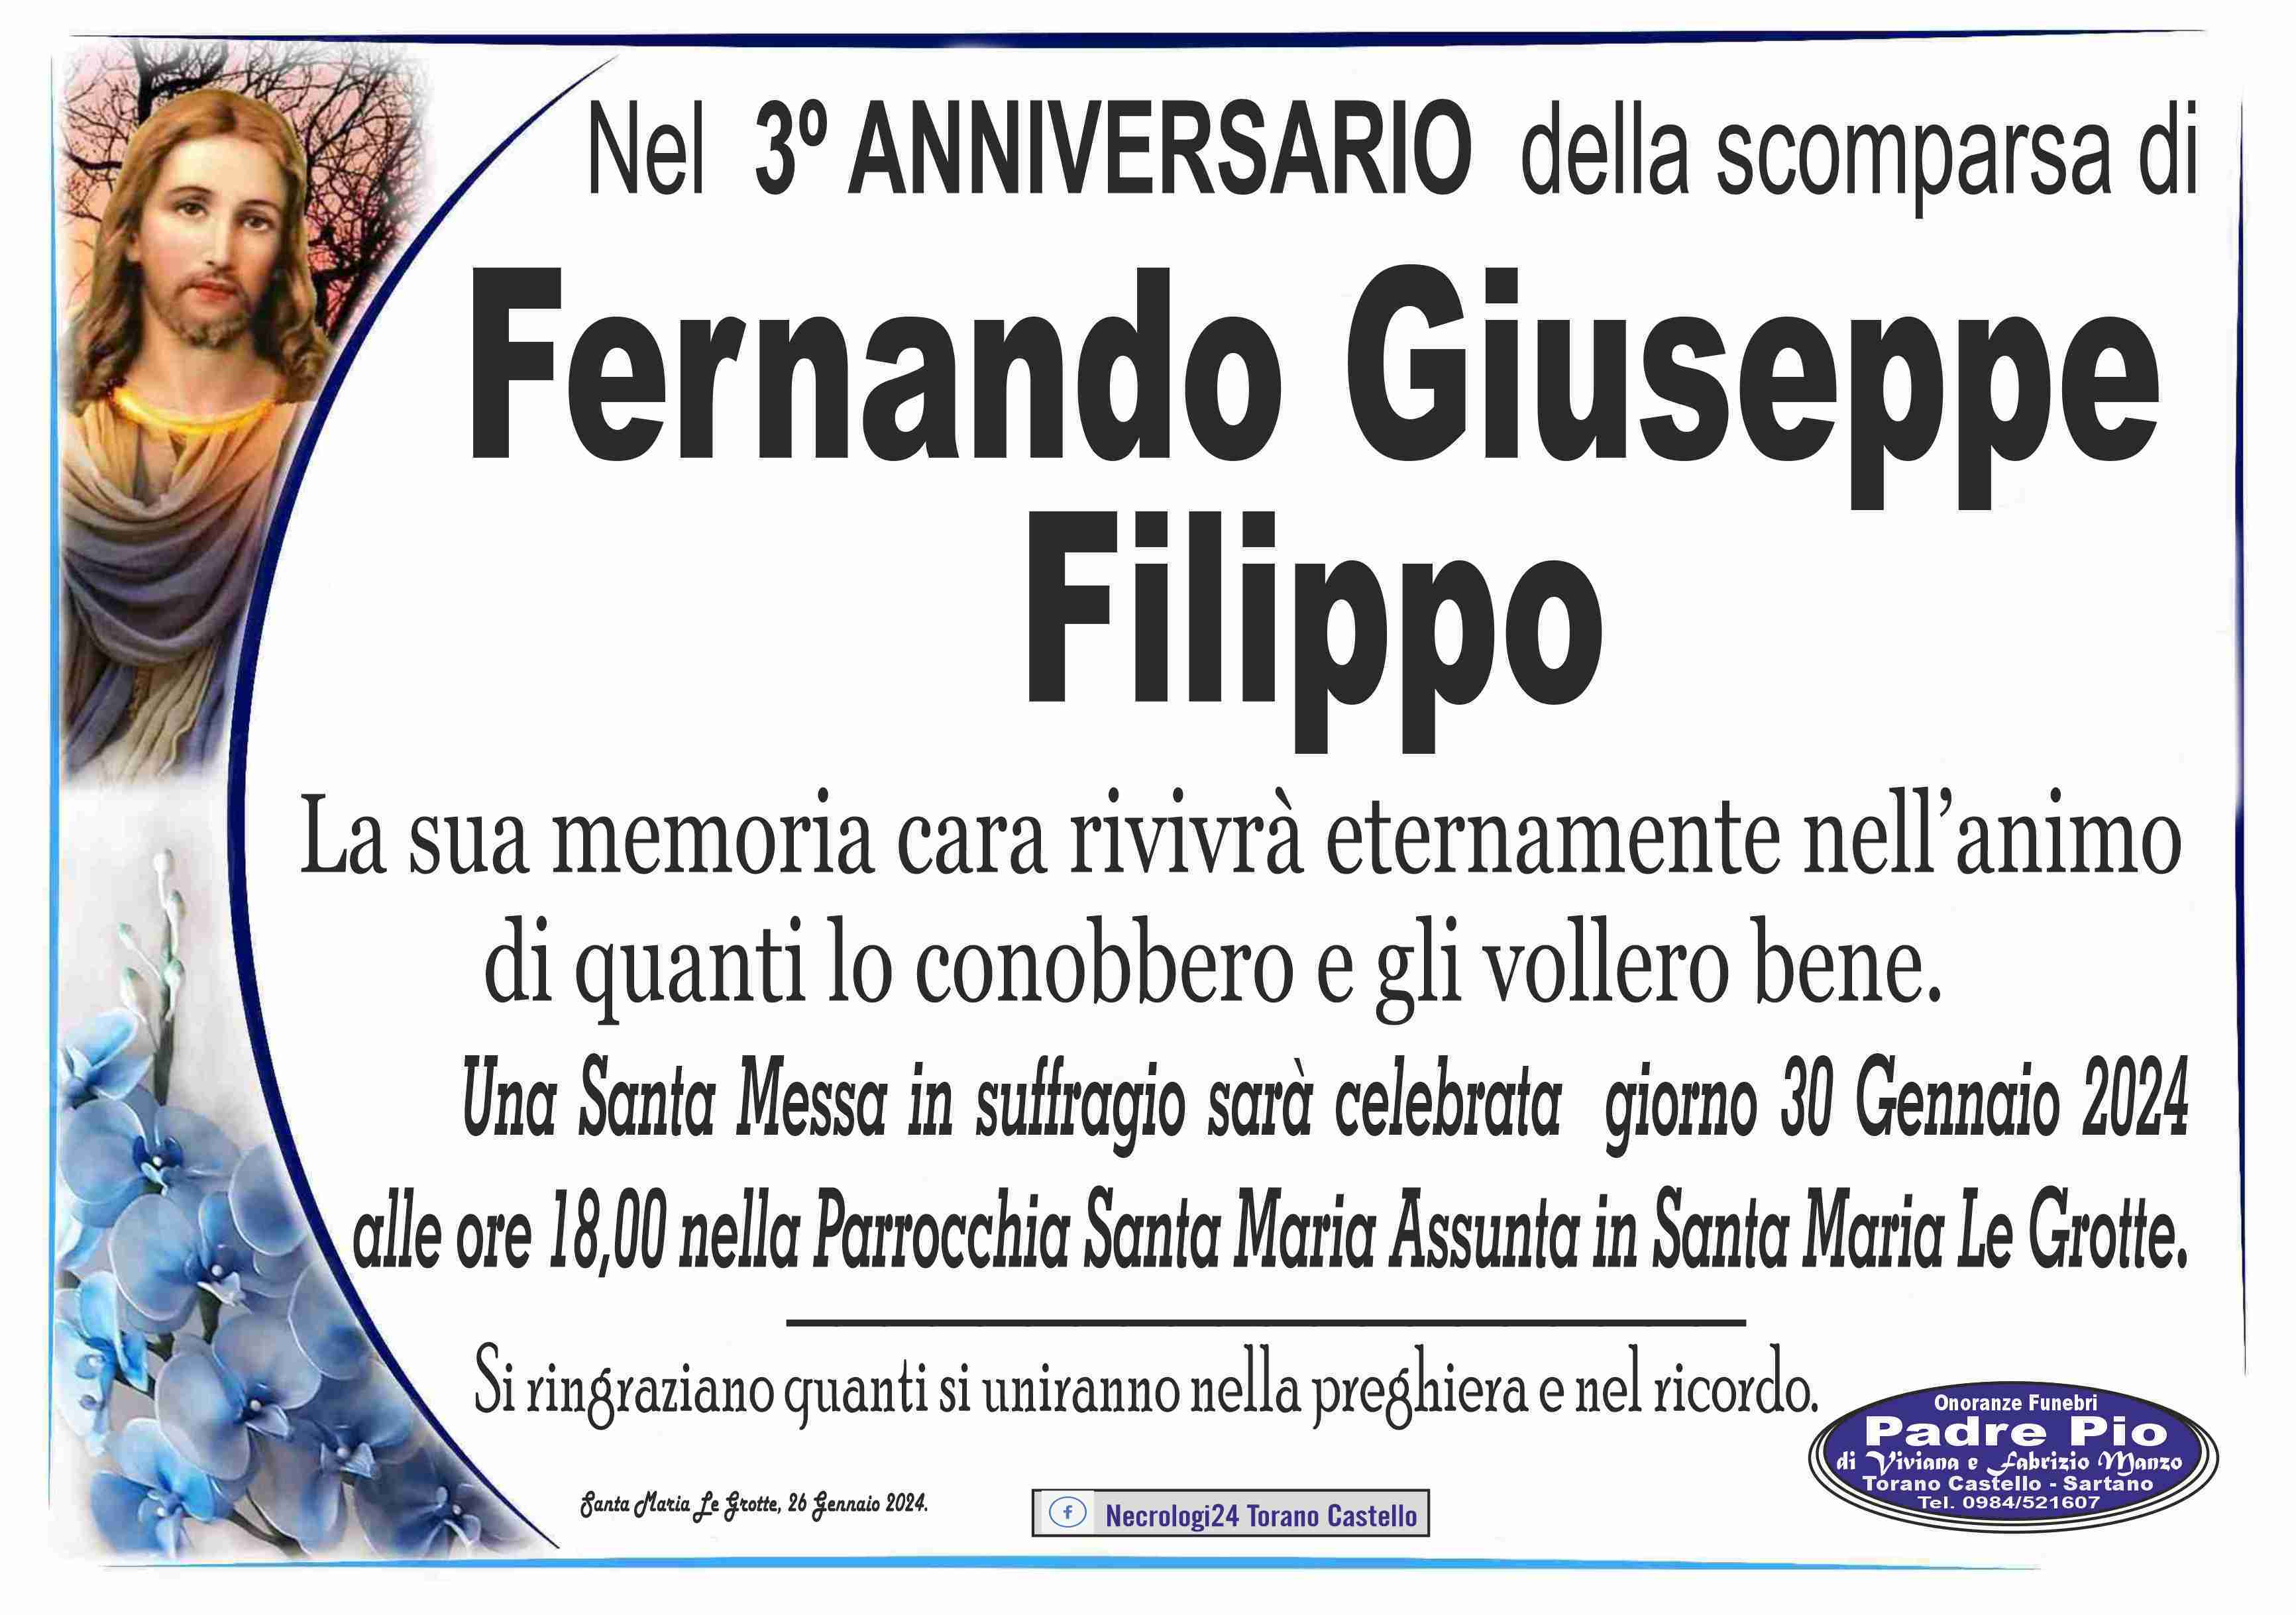 Fernando Giuseppe Filippo